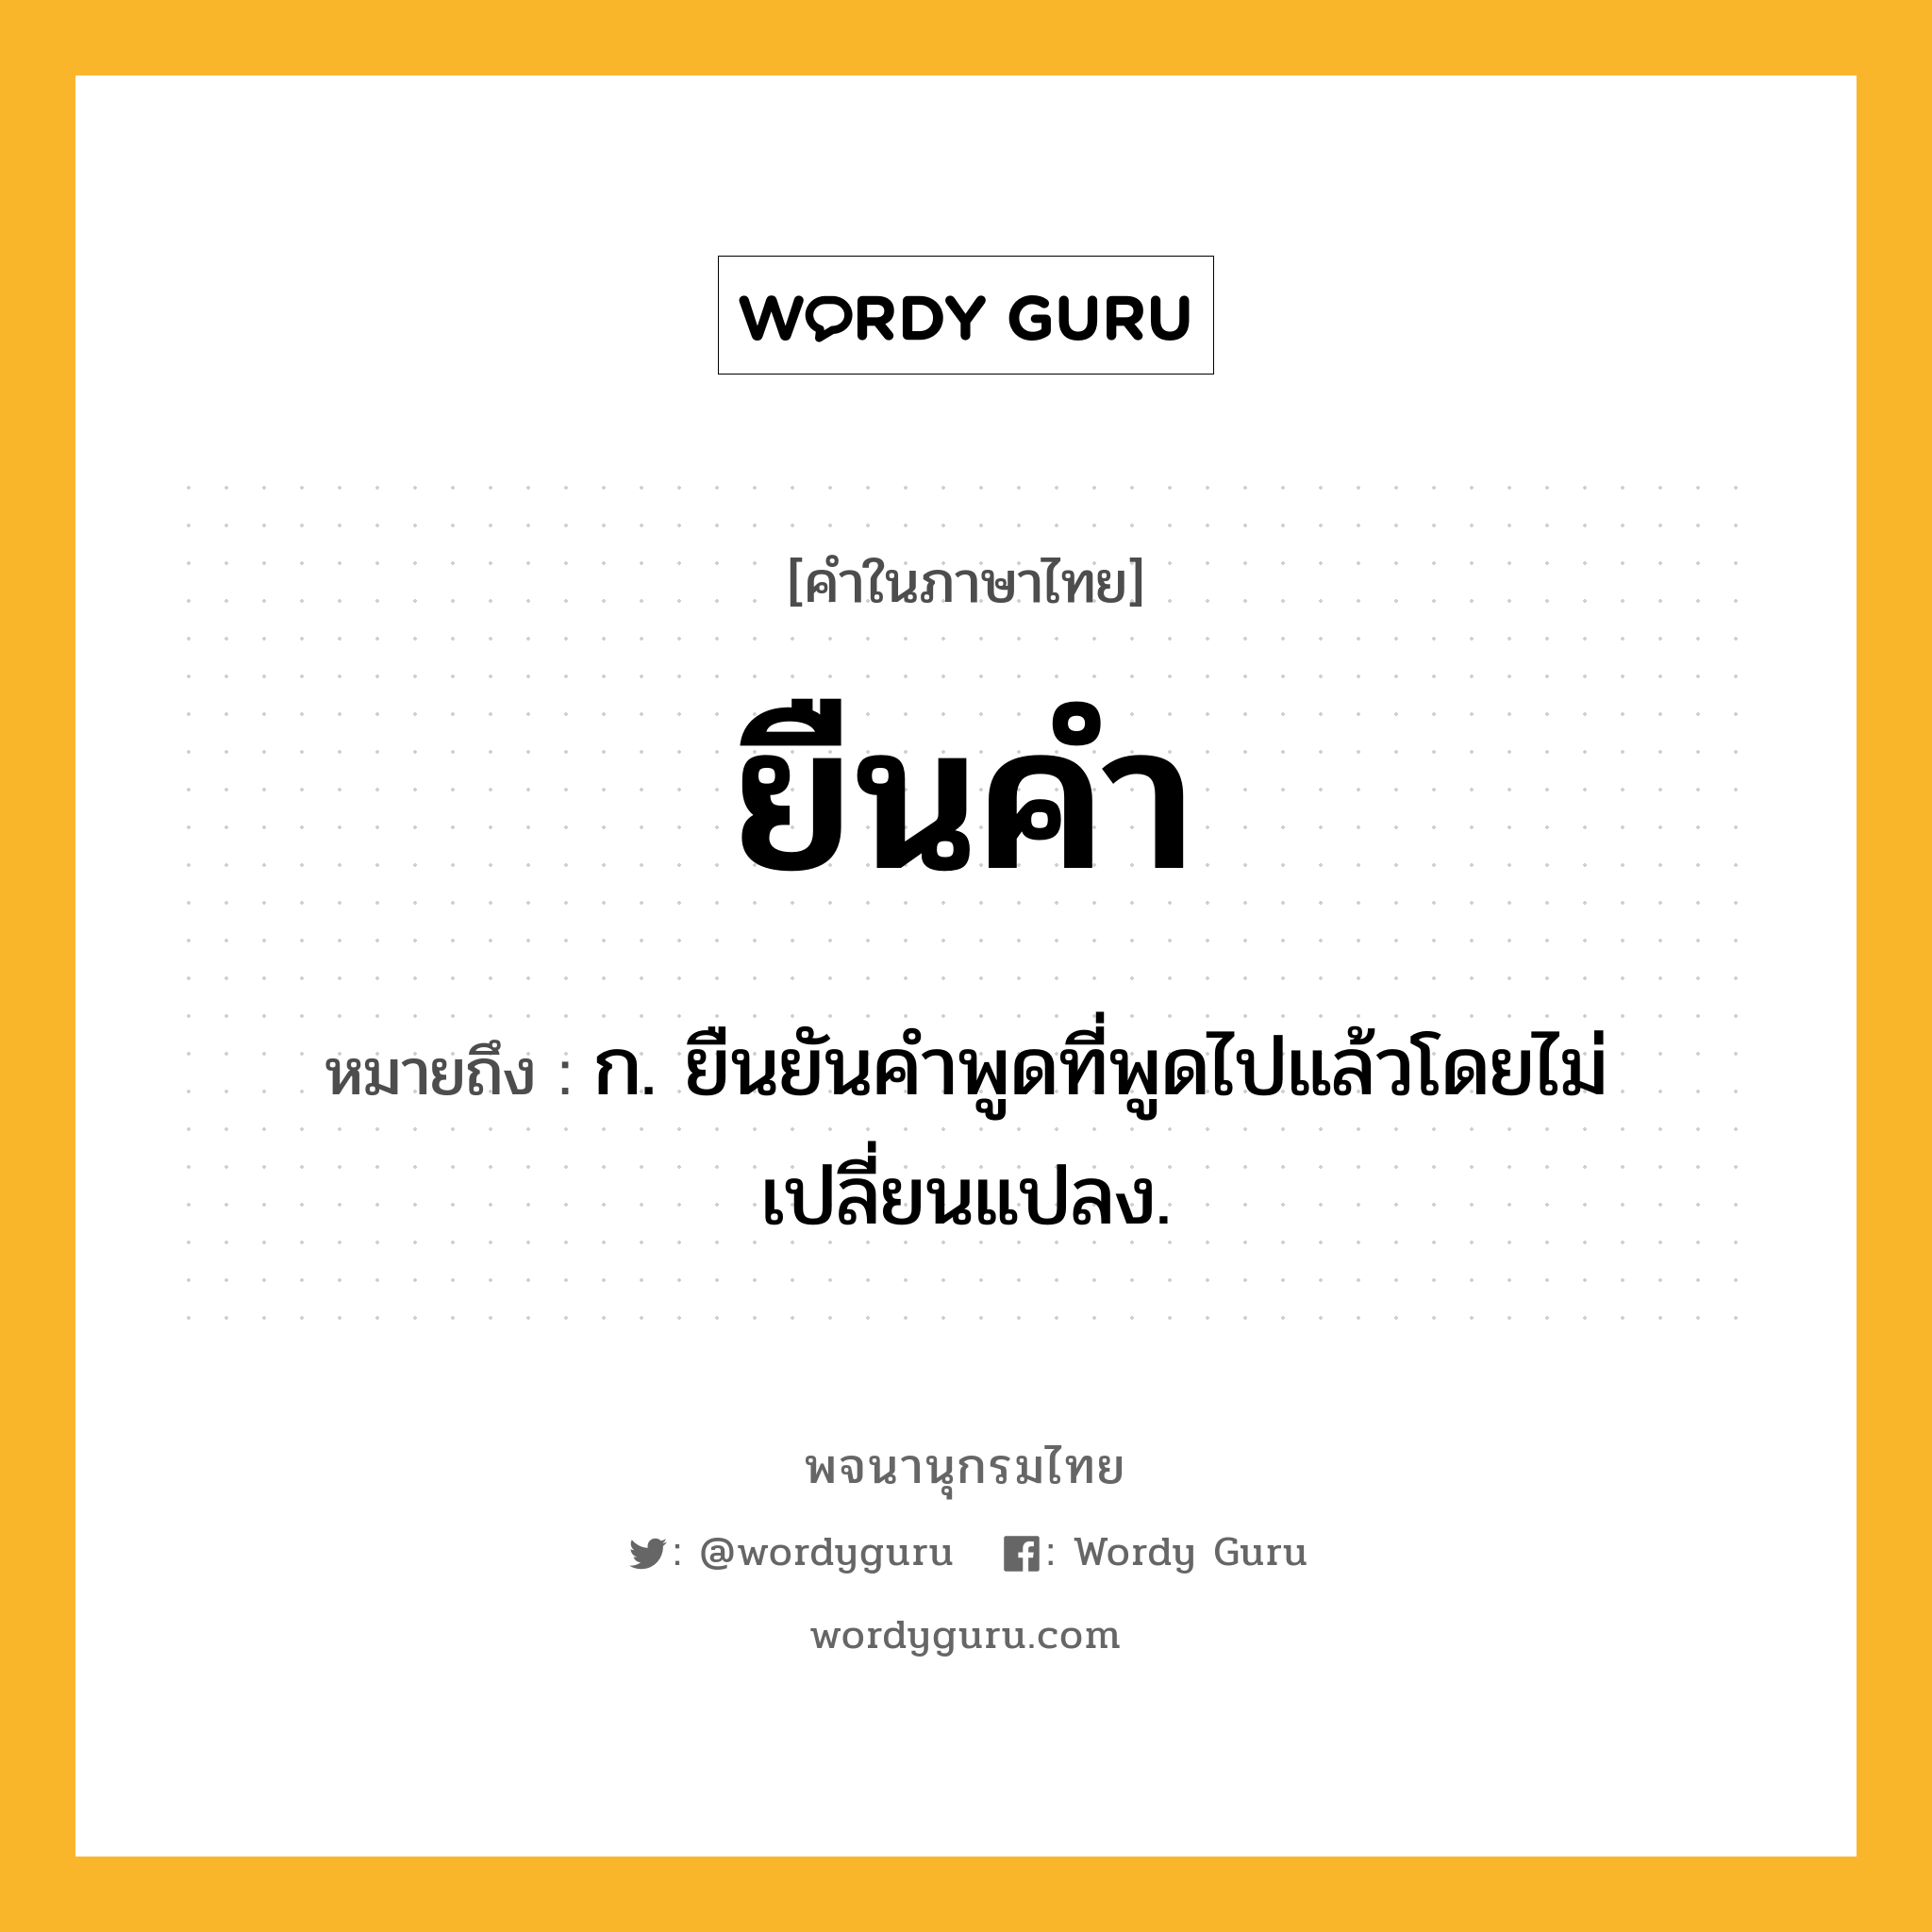 ยืนคำ หมายถึงอะไร?, คำในภาษาไทย ยืนคำ หมายถึง ก. ยืนยันคำพูดที่พูดไปแล้วโดยไม่เปลี่ยนแปลง.